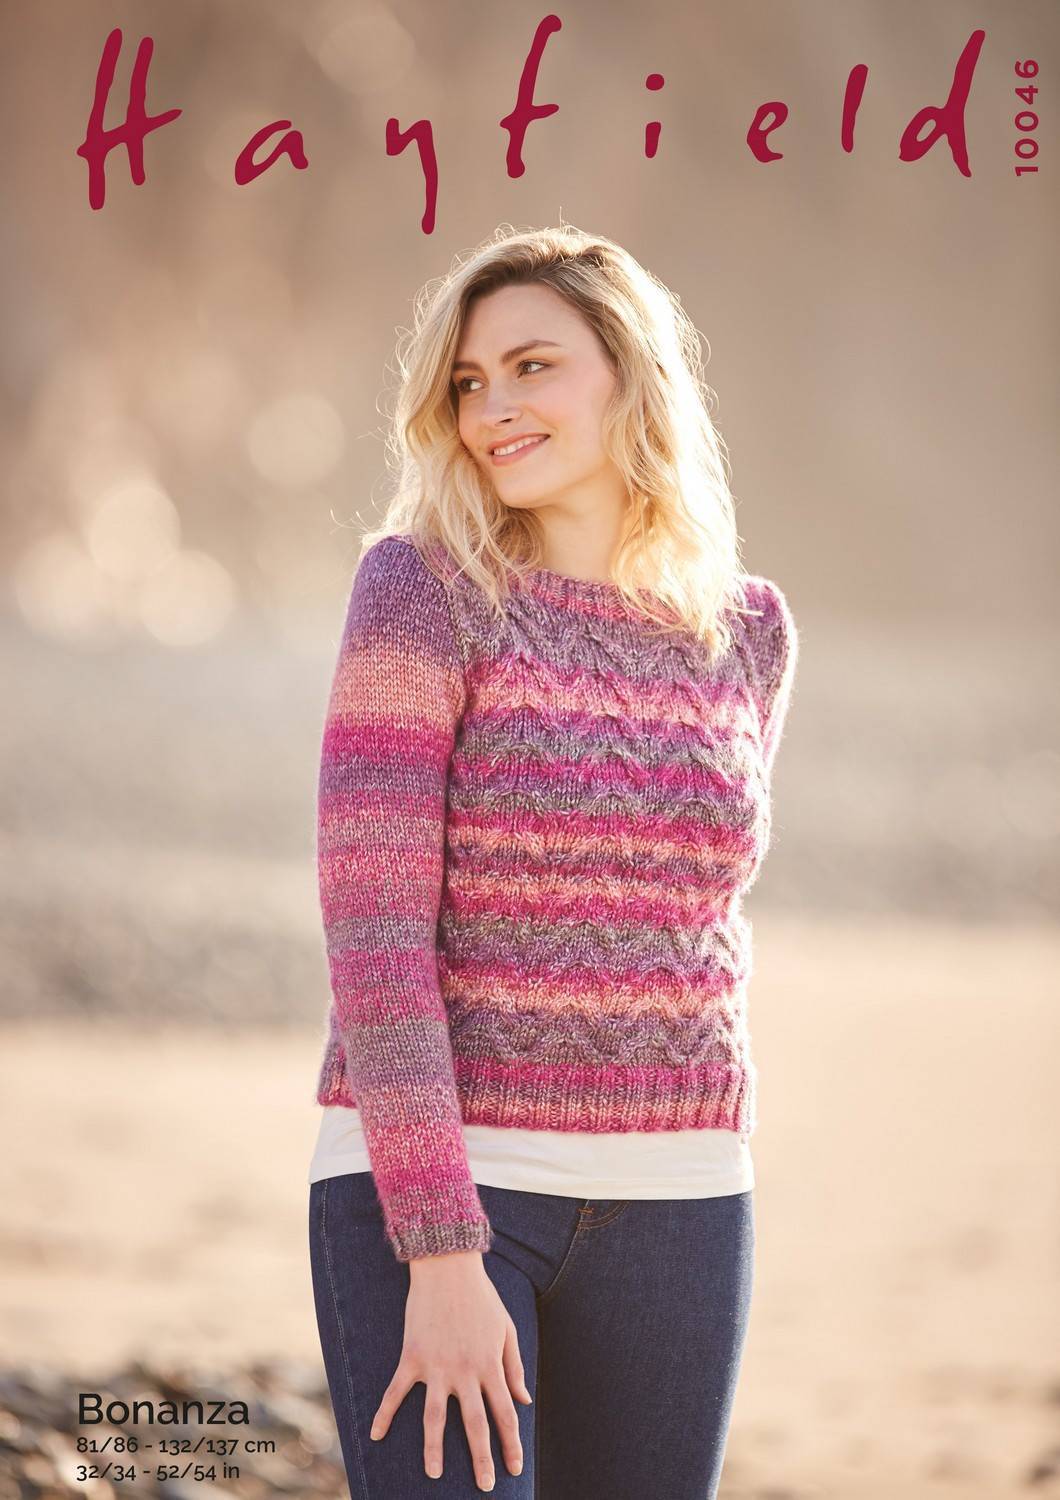 Sweater in Hayfield Bonanza (10046) | The Knitting Network